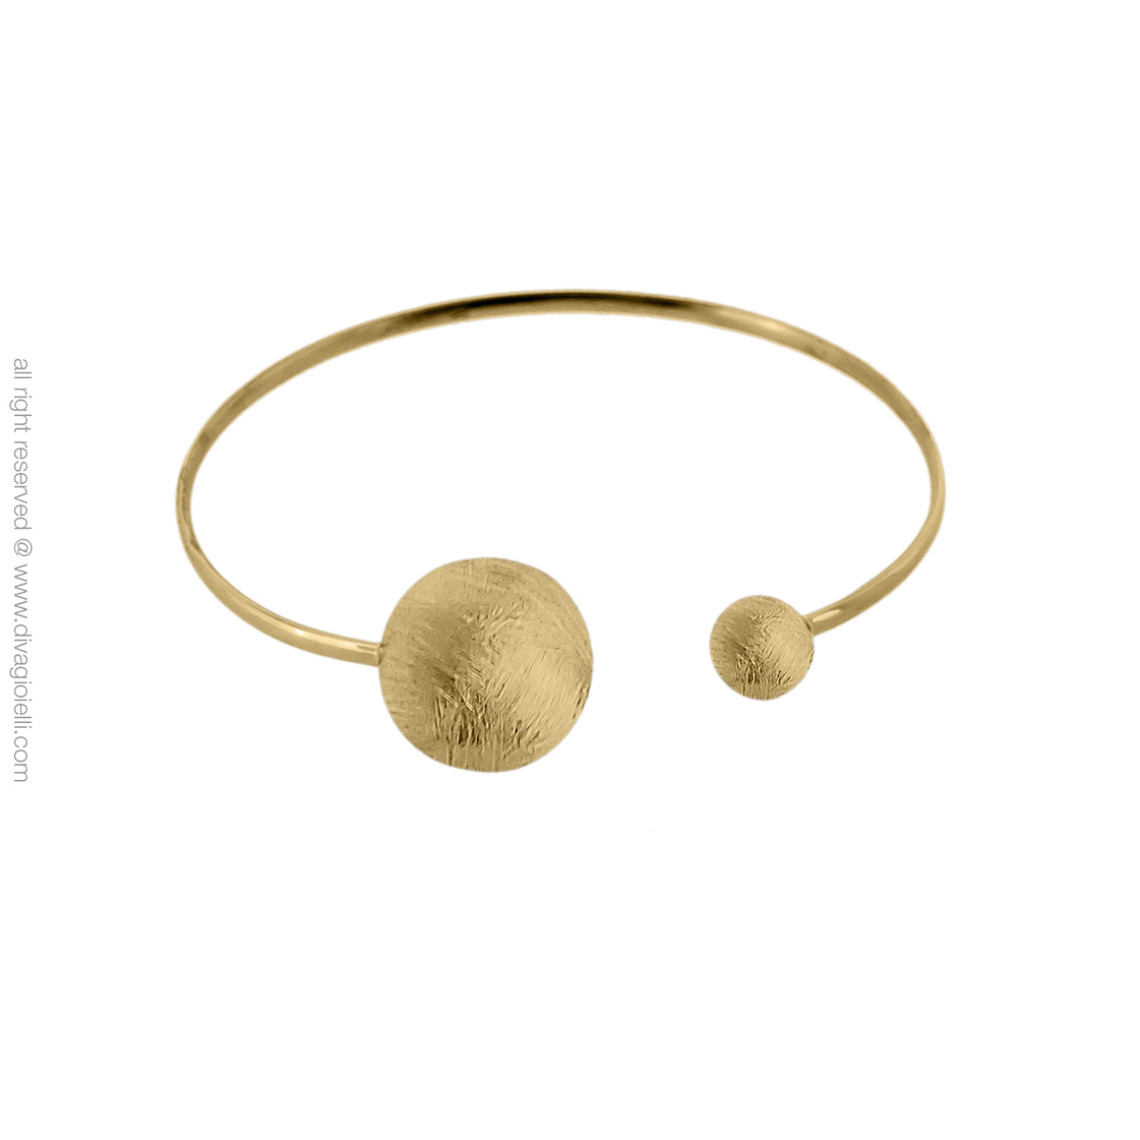 bracelet 17334-003 argent doré - diva gioielli eclisse